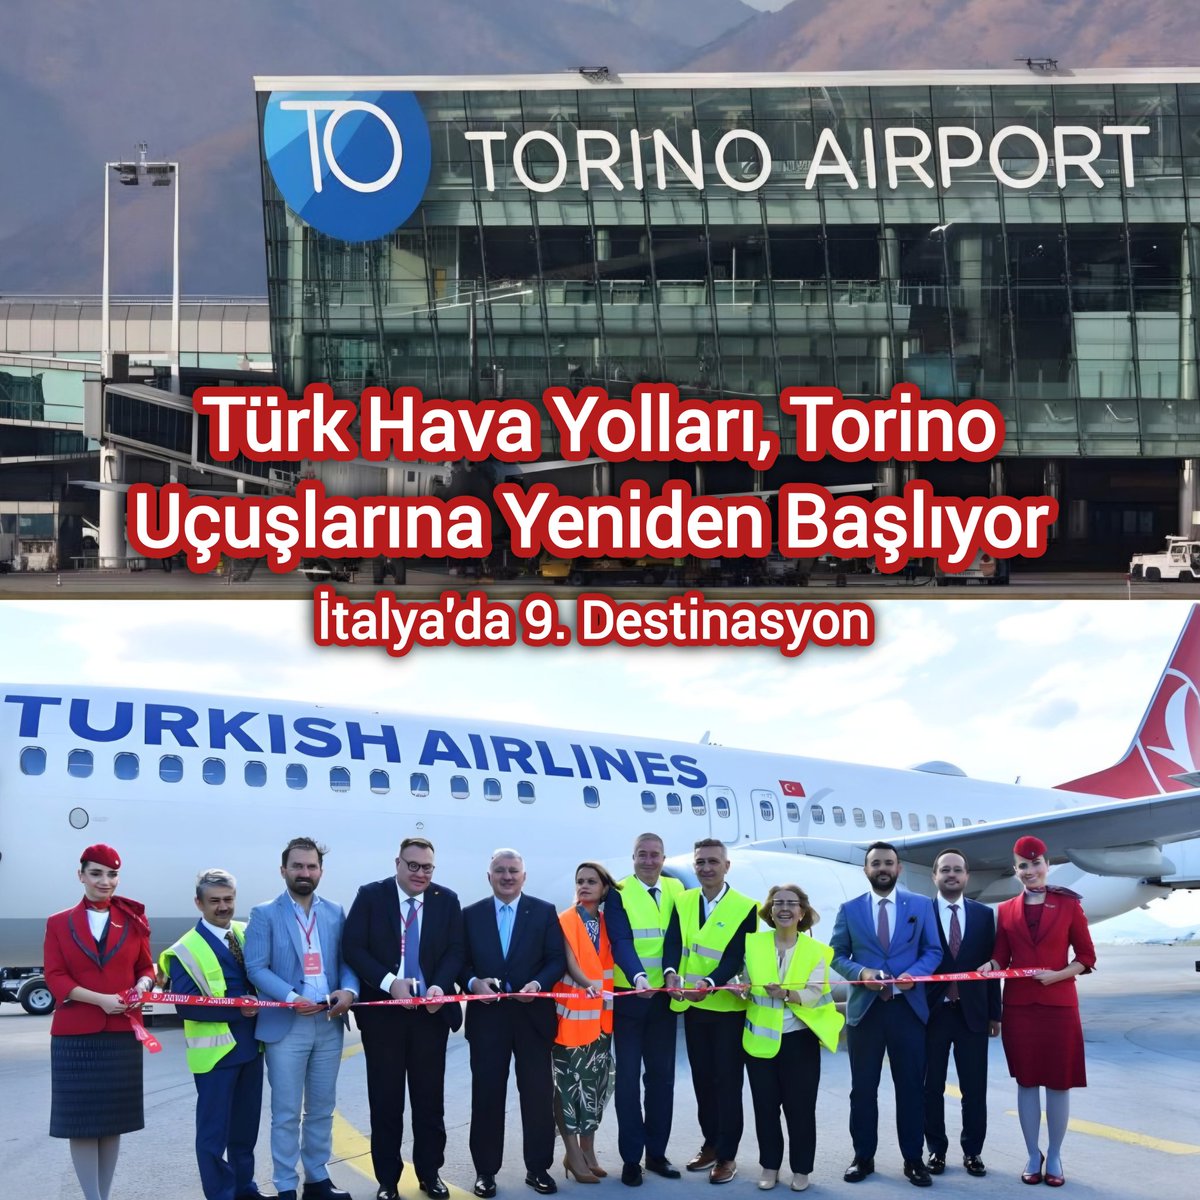 Yeni Rota: Torino 🇮🇹 • Türk Hava Yolları, 2018'de durdurduğu İstanbul - Torino uçuşlarını tekrar başlatıyor. • 10 Temmuz'dan itibaren günde bir kez olmak üzere iki şehir arasında günlük uçuş gerçekleştirecek. Bu uçuşlarda Boeing B737 tipi uçaklar kullanılacak. • Böylece…